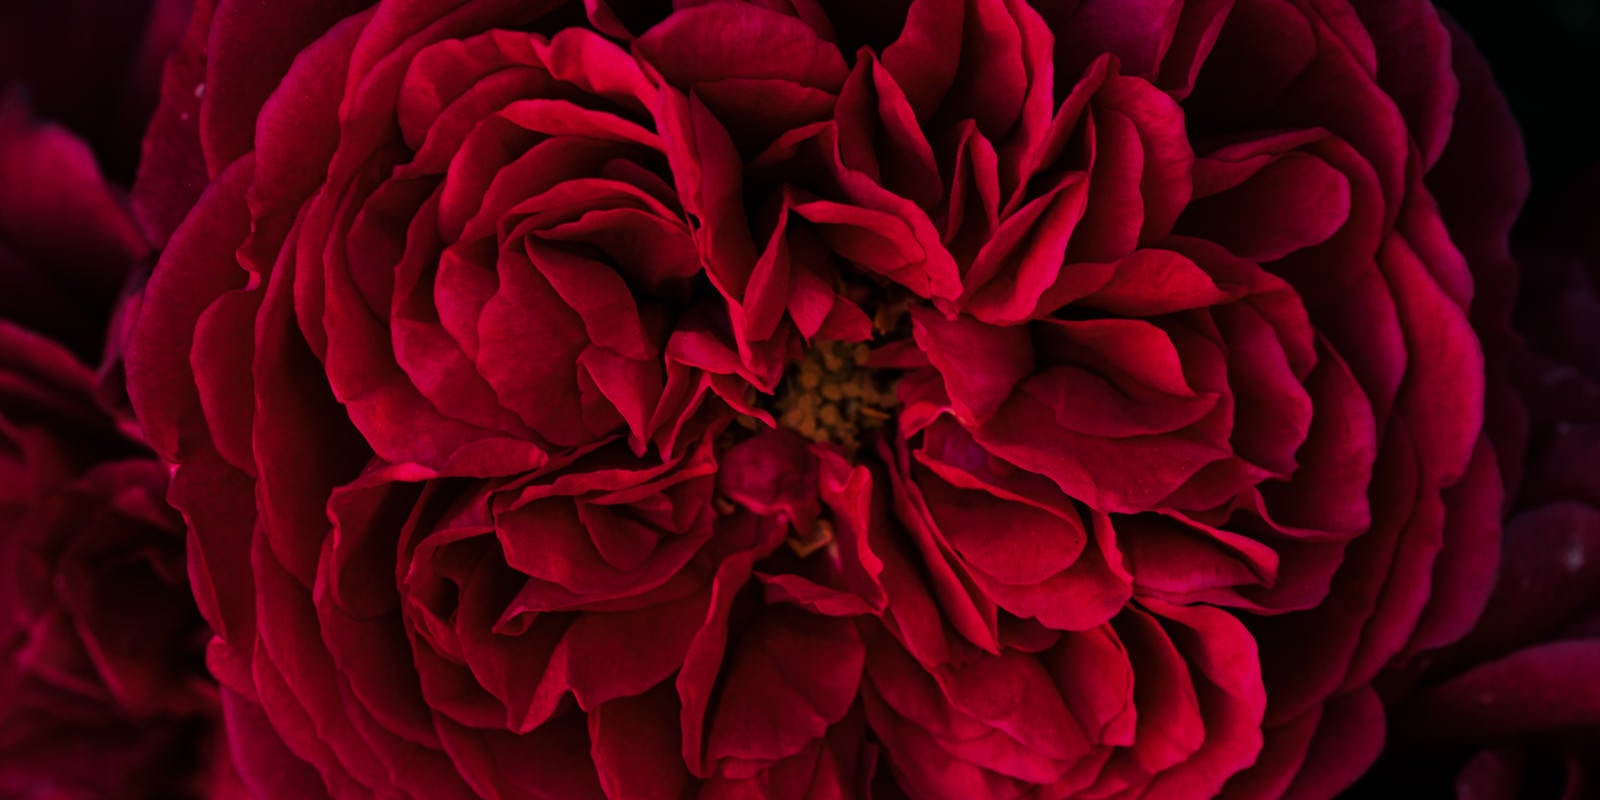 「幾重にも重なる麗しい赤い花びら」の写真